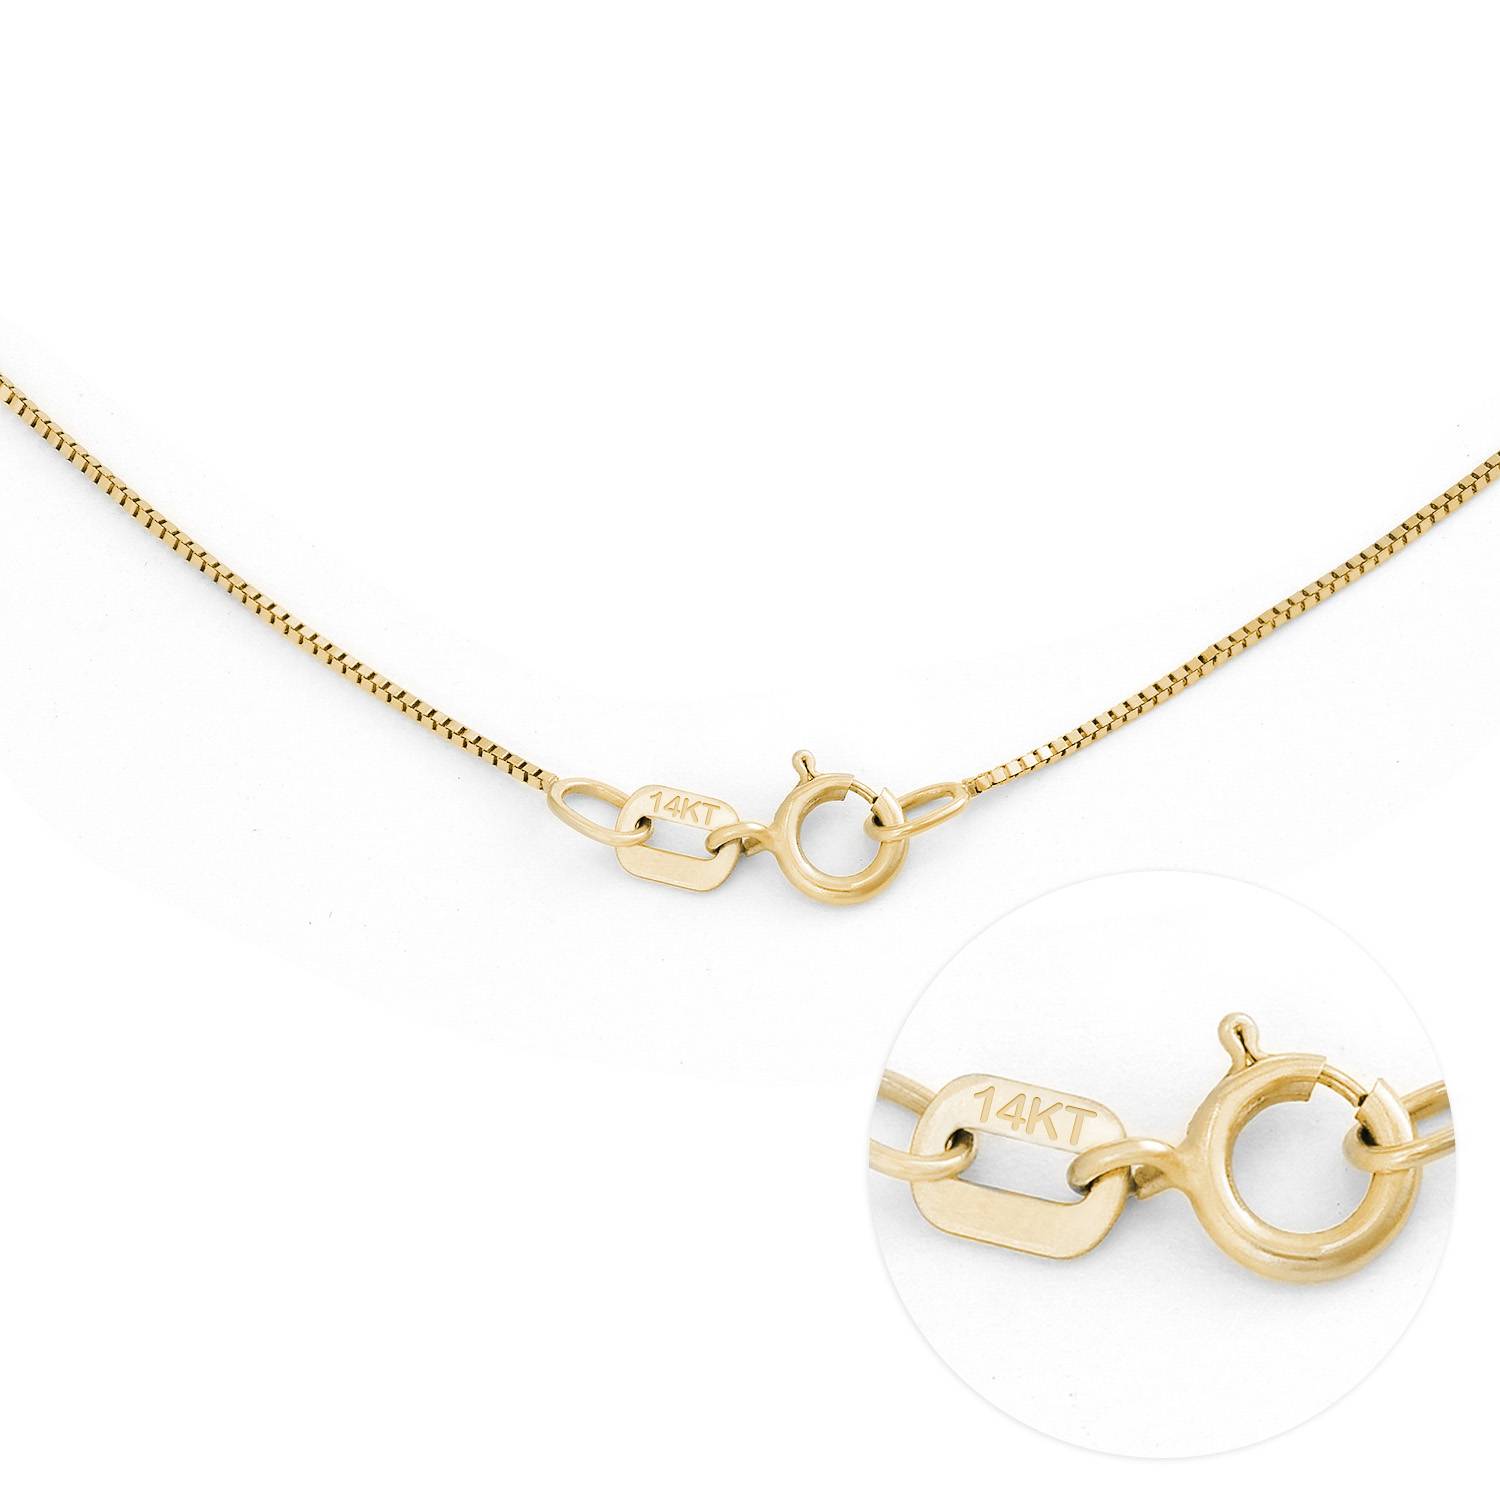 Vertikalt Infinity Halsband med Månadsstenar i 14k guld-3 produktbilder